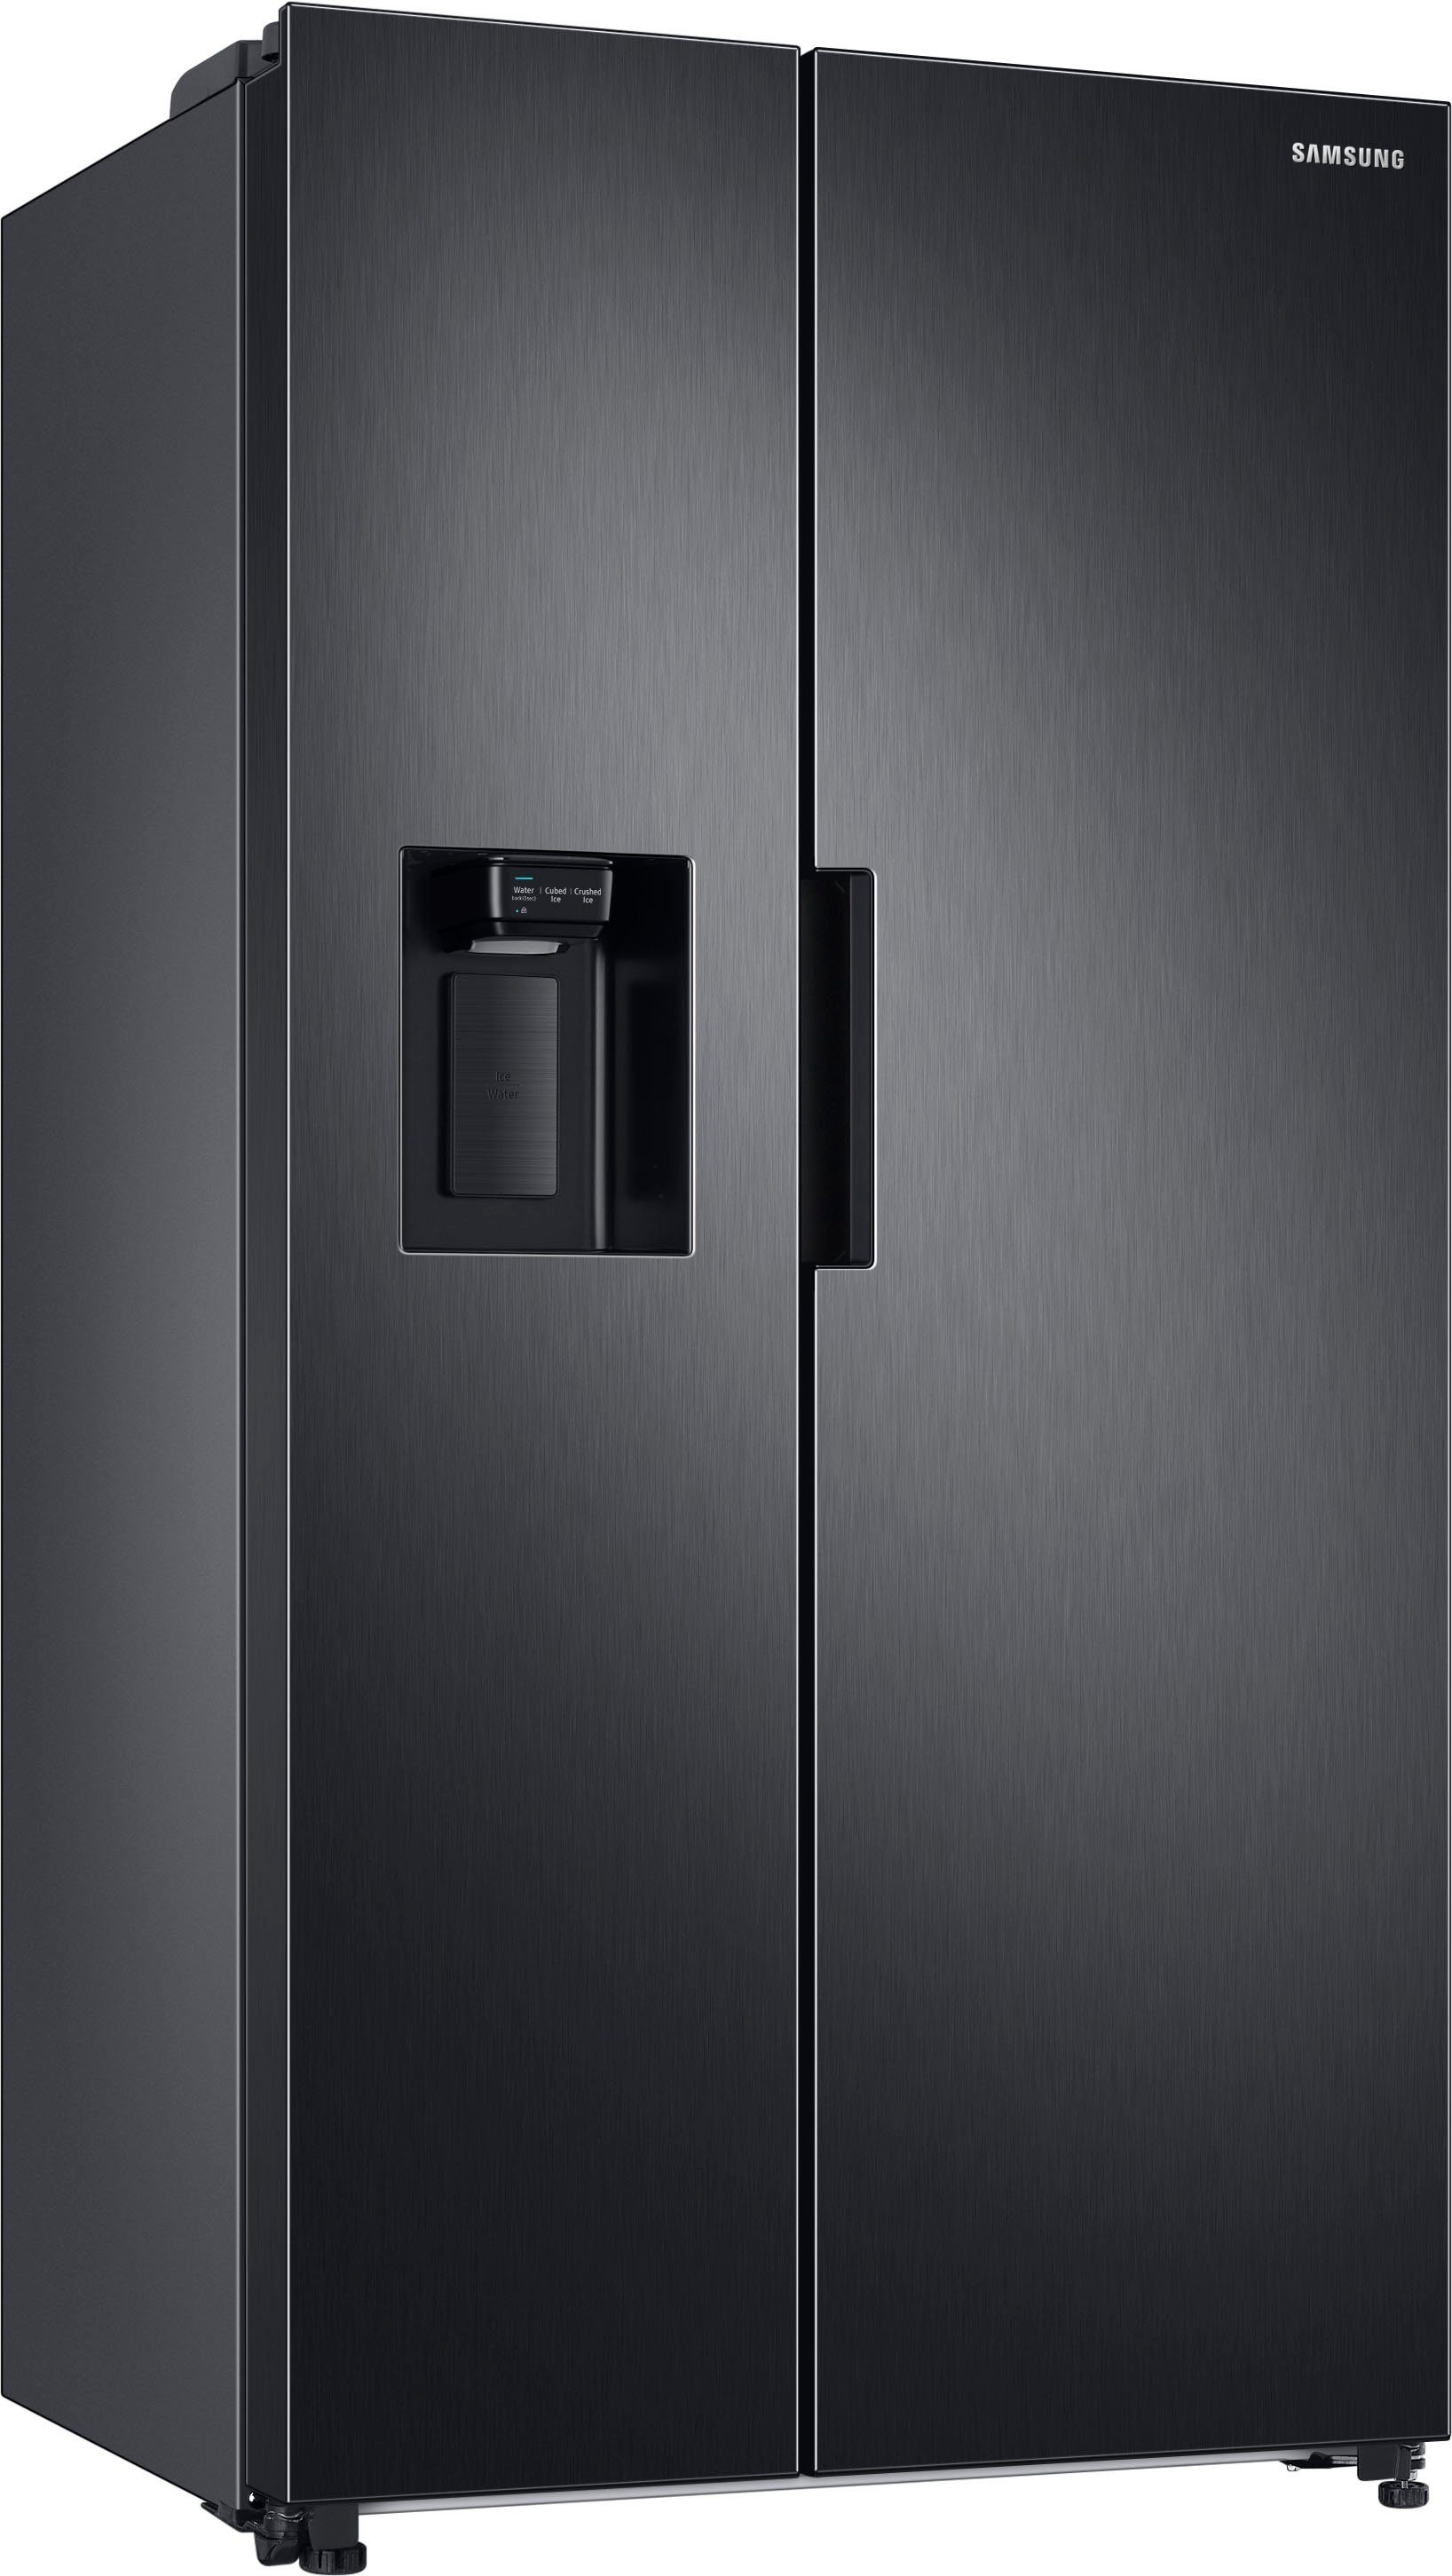 Samsung Side-by-Side RS6JA8811B1, 178 cm hoch, 91,2 cm breit, mit Festwasseranschluss schwarzes Edelstahl | Side-by-Side Kühlschränke